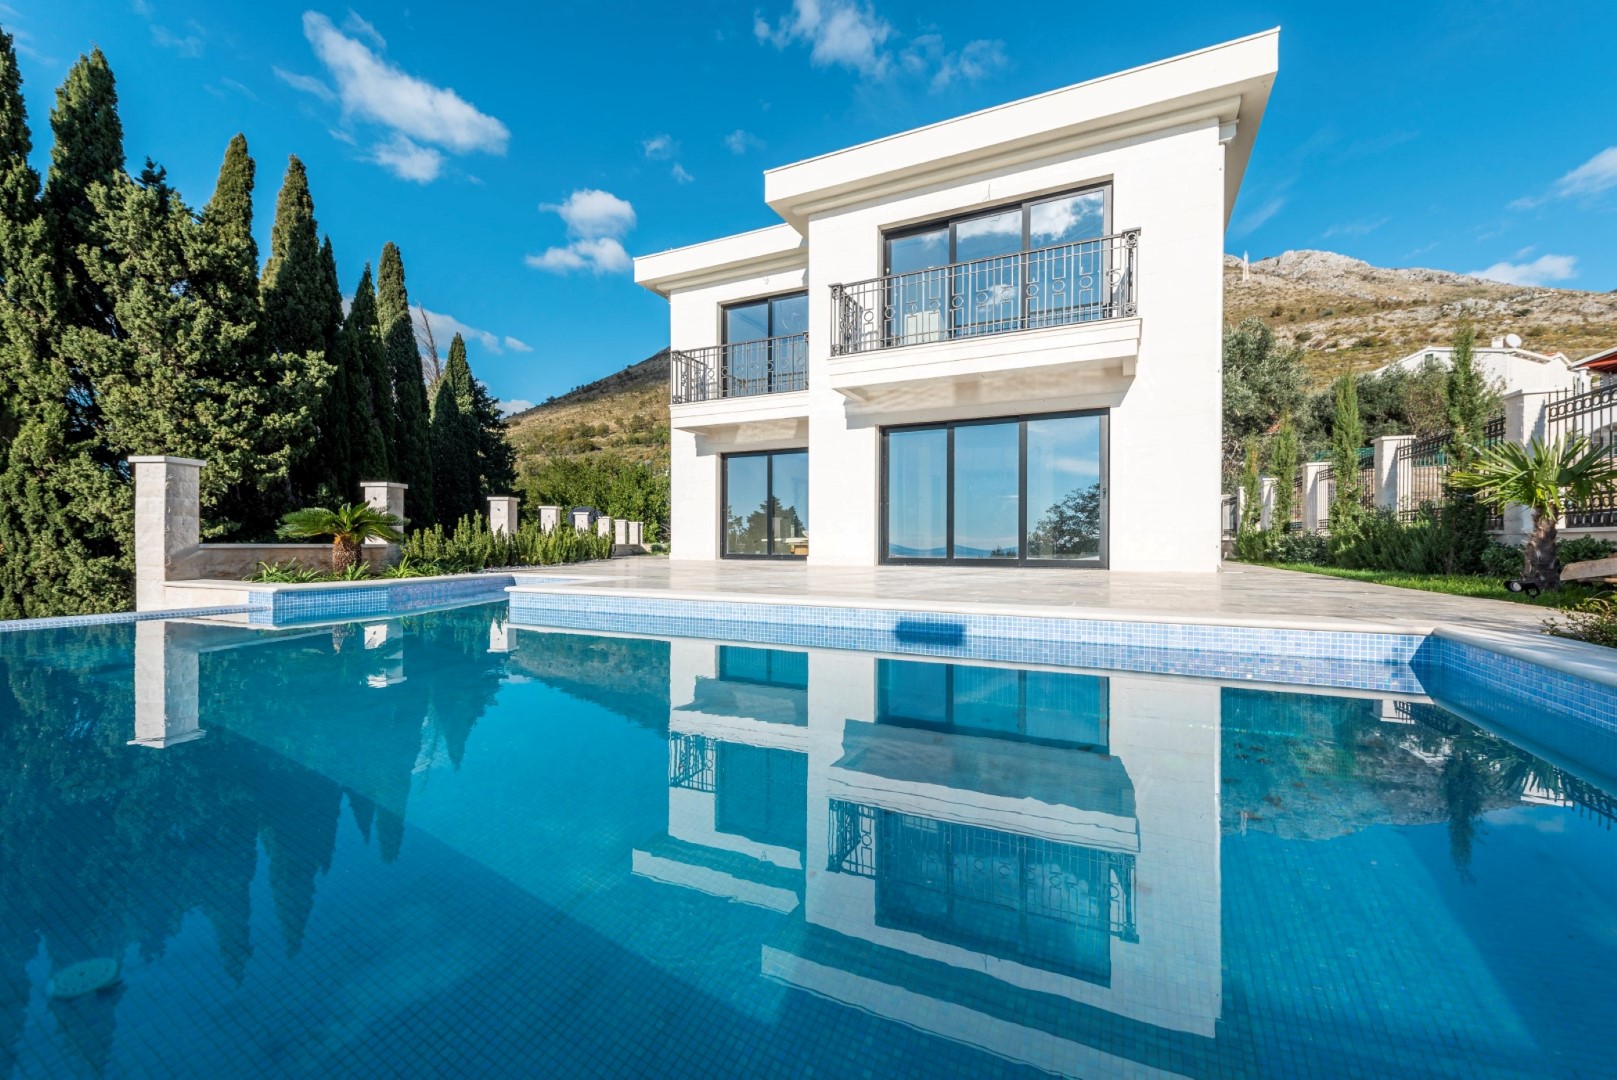 Budva, Perazica Do – new villa with a pool and sea views